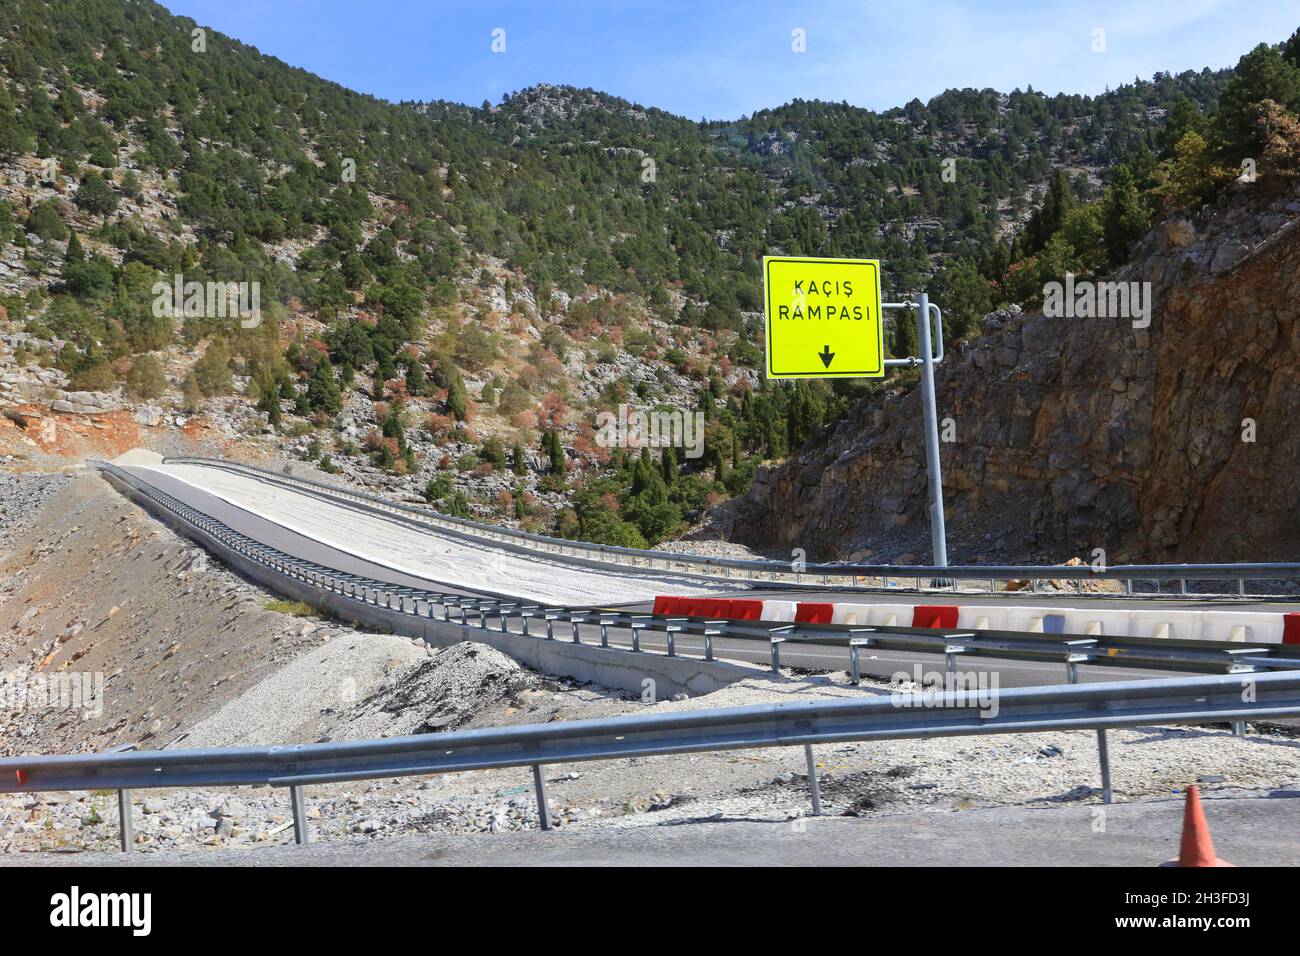 Eine abgelegene Spur (kaçış rampası) auf der Autobahn D695 (Konya Manavgat Yolu) im Süden der Türkei (Provinz Konya). Fahrzeuge kommen im losen Schotter zum Stillstand. Stockfoto